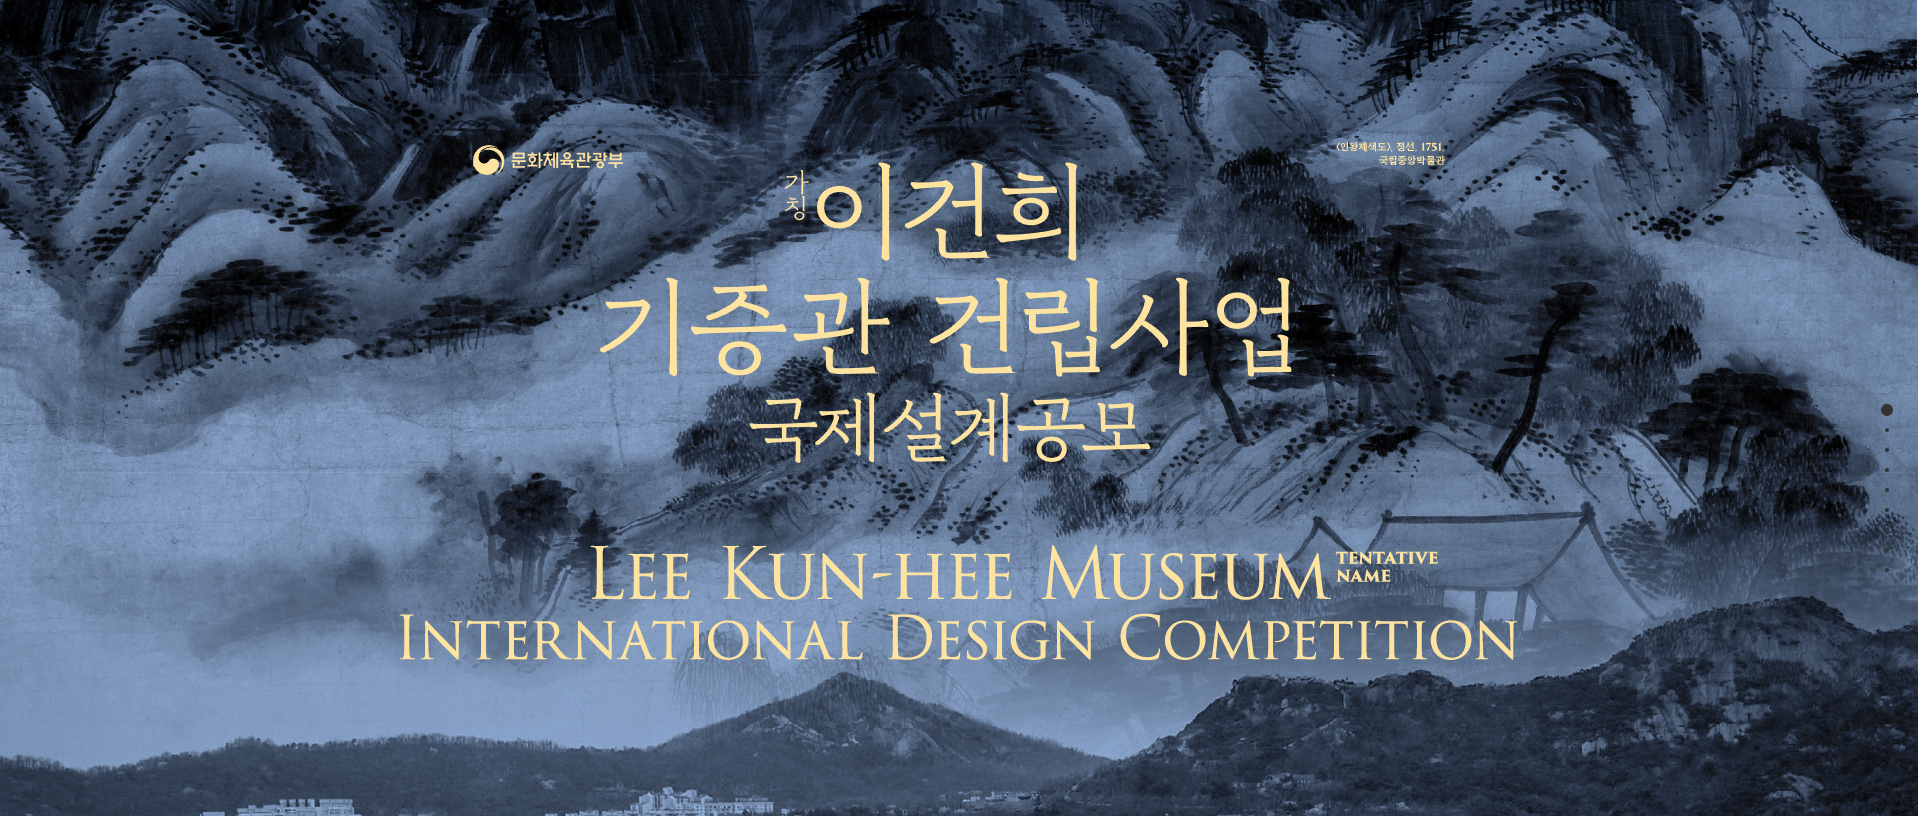 韩国李健熙博物馆（暂名）国际设计竞赛